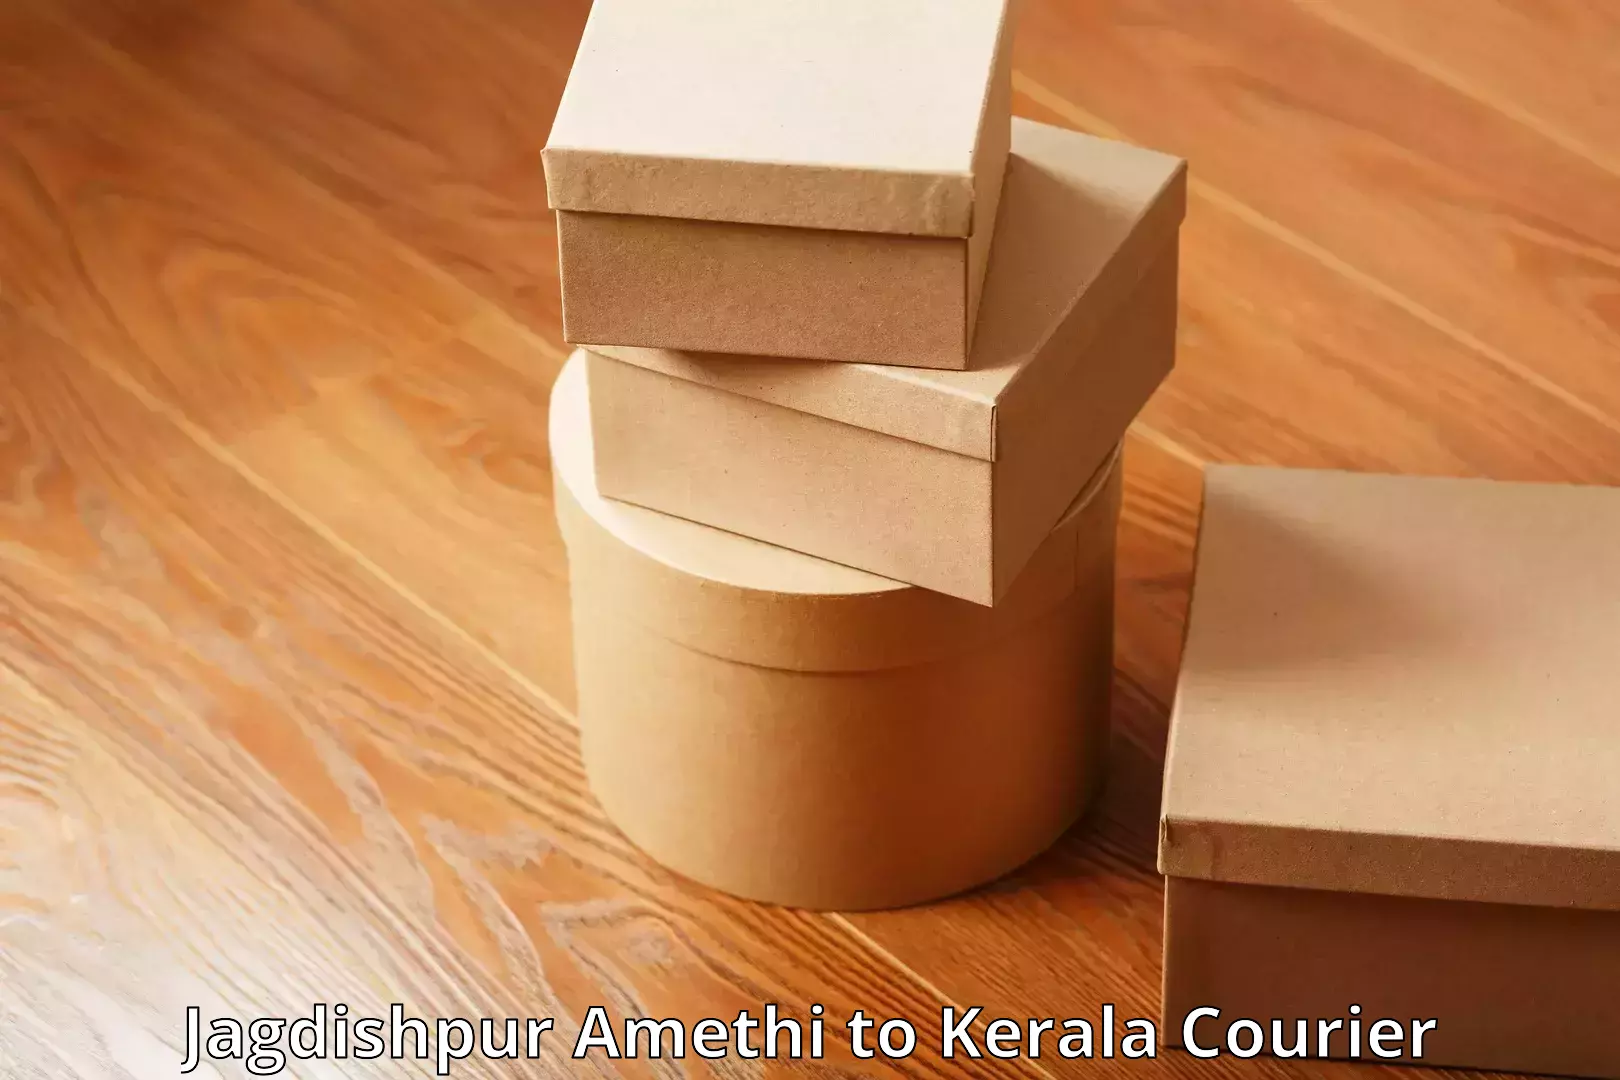 Luggage shipping service Jagdishpur Amethi to Kerala